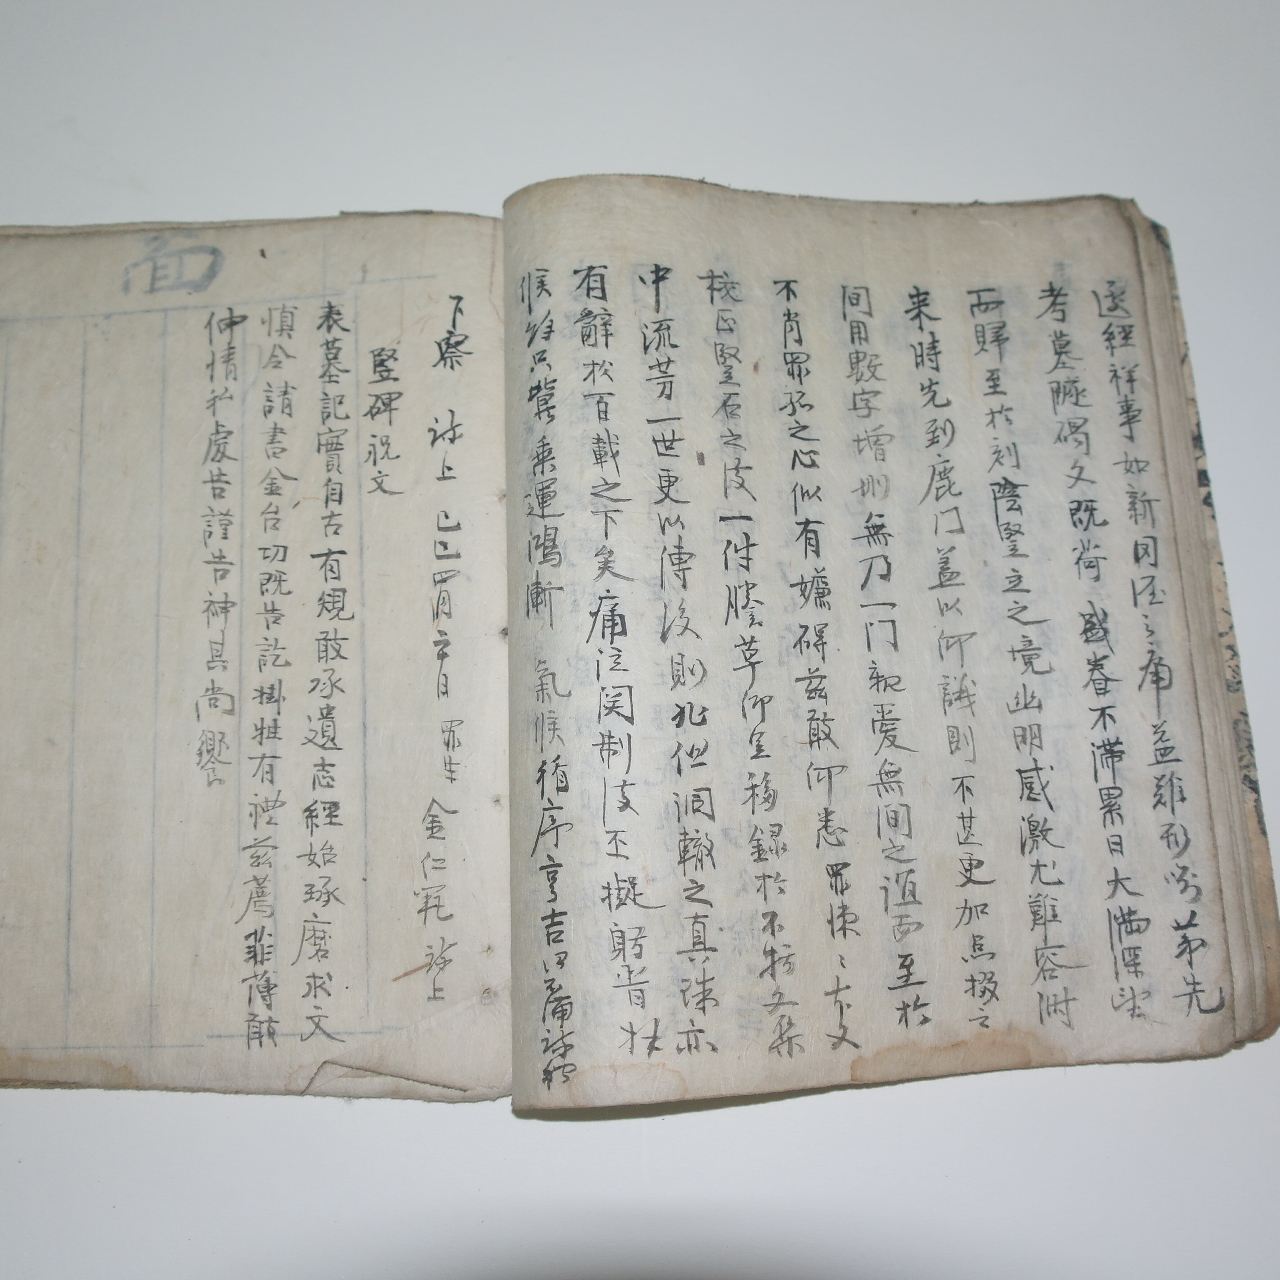 조선시대 고필사본 만록수득목기(漫錄隨得牧記) 1책완질